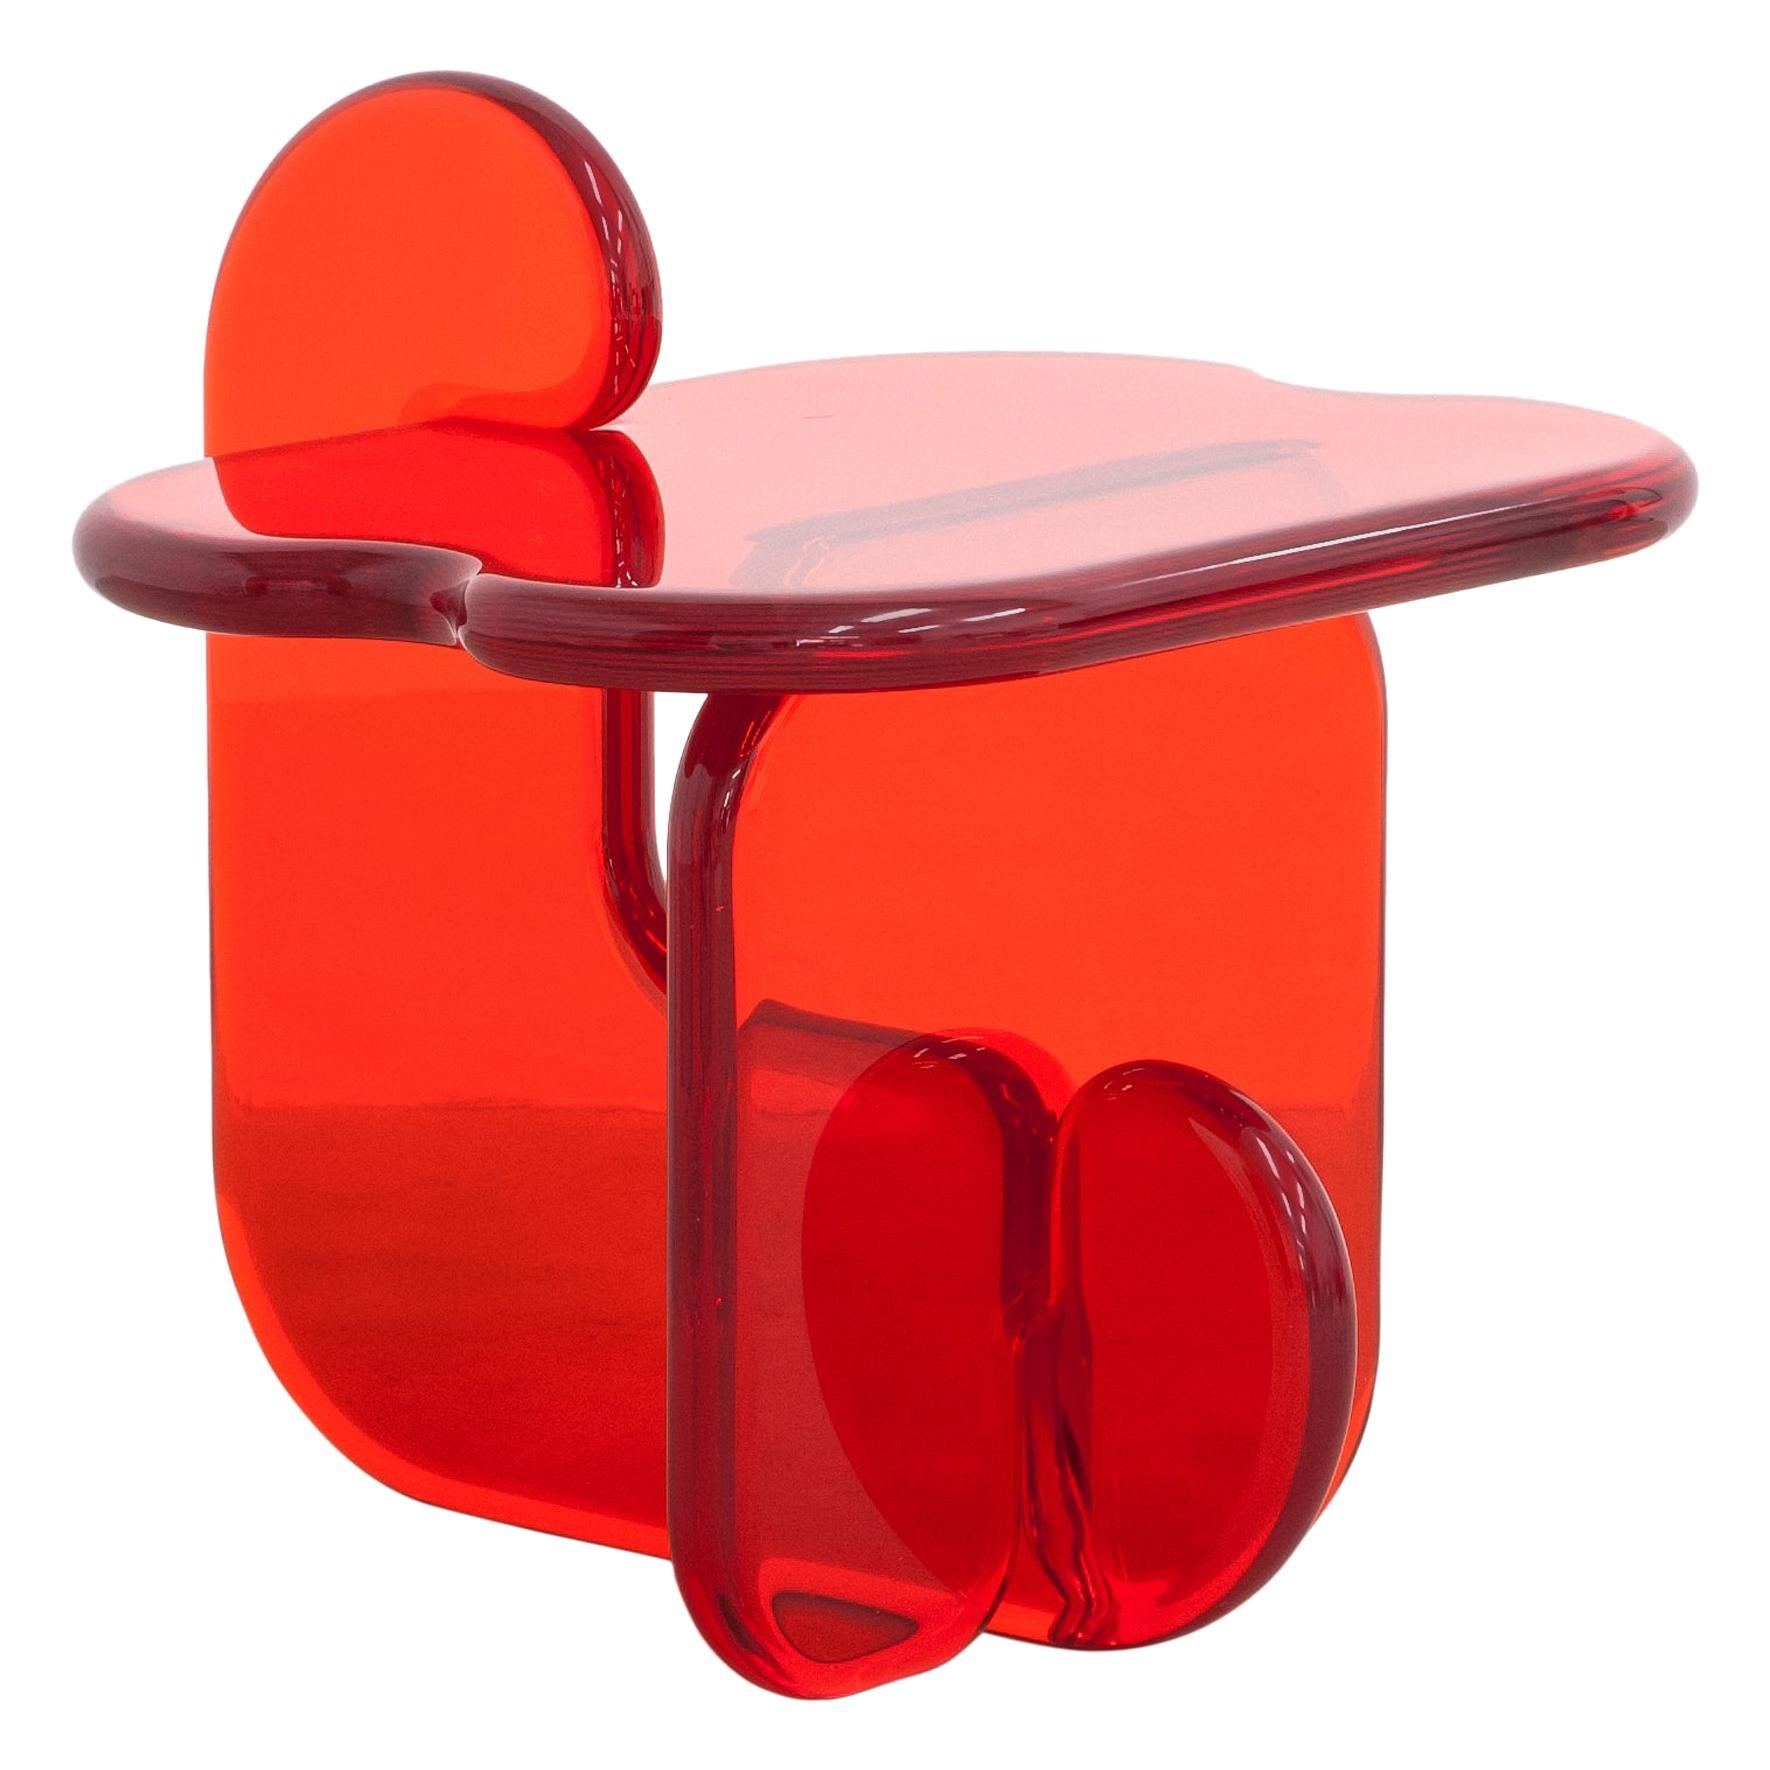 Plump resin side table in Amaro Orange by Ian Alistair Cochran